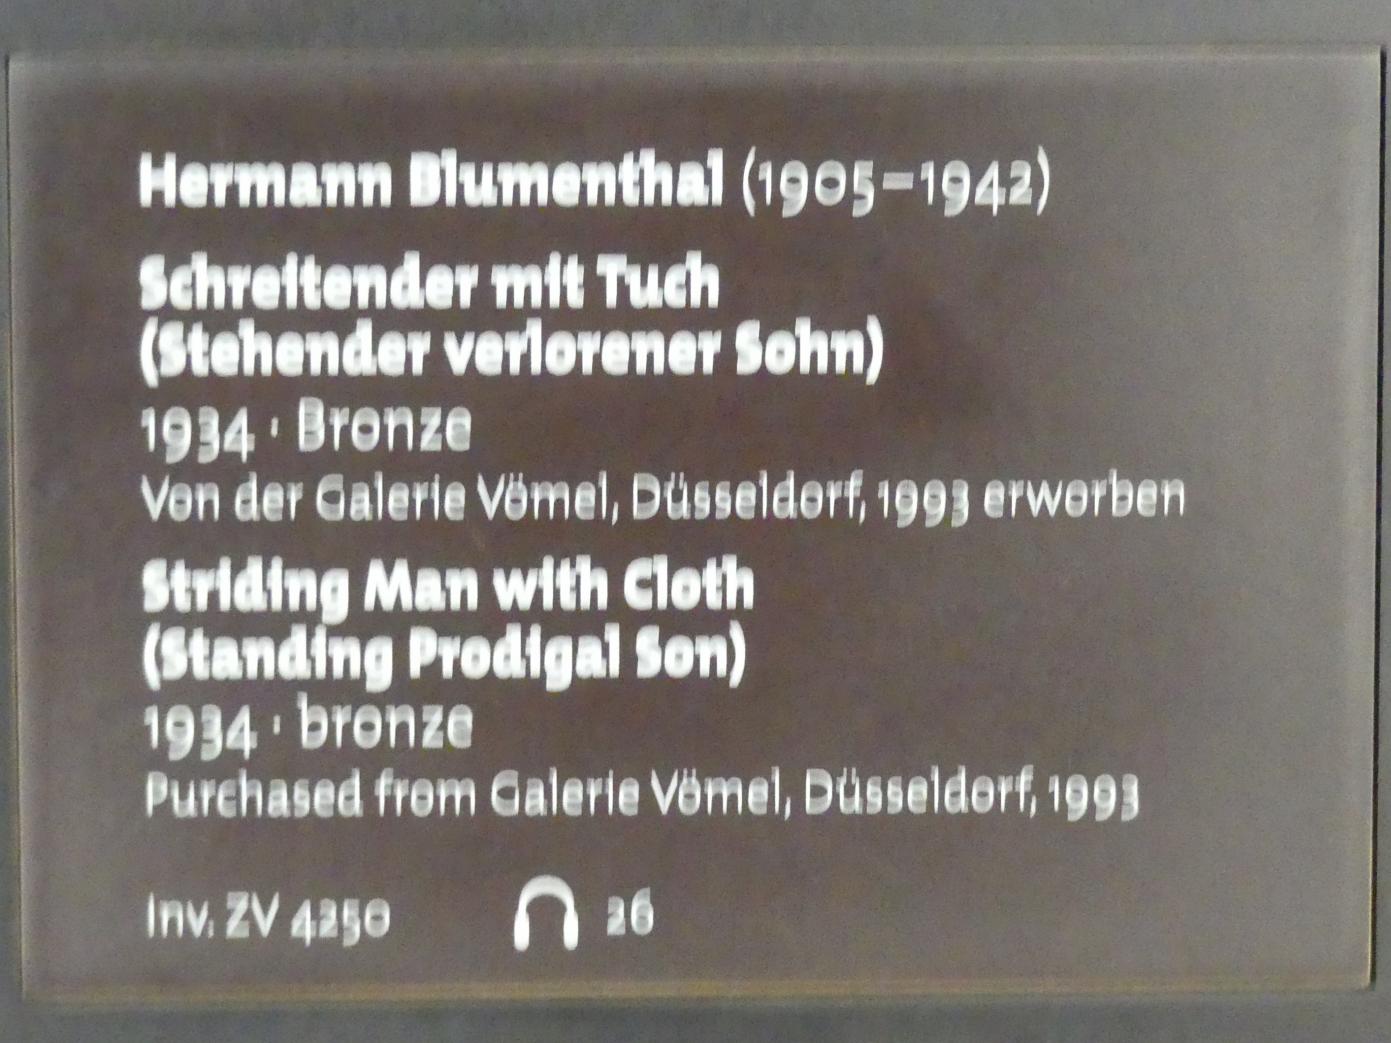 Hermann Blumenthal (1934–1939), Schreitender mit Tuch (Stehender verlorener Sohn), Dresden, Albertinum, Galerie Neue Meister, Erdgeschoss, Skulpturenhalle, 1934, Bild 3/3